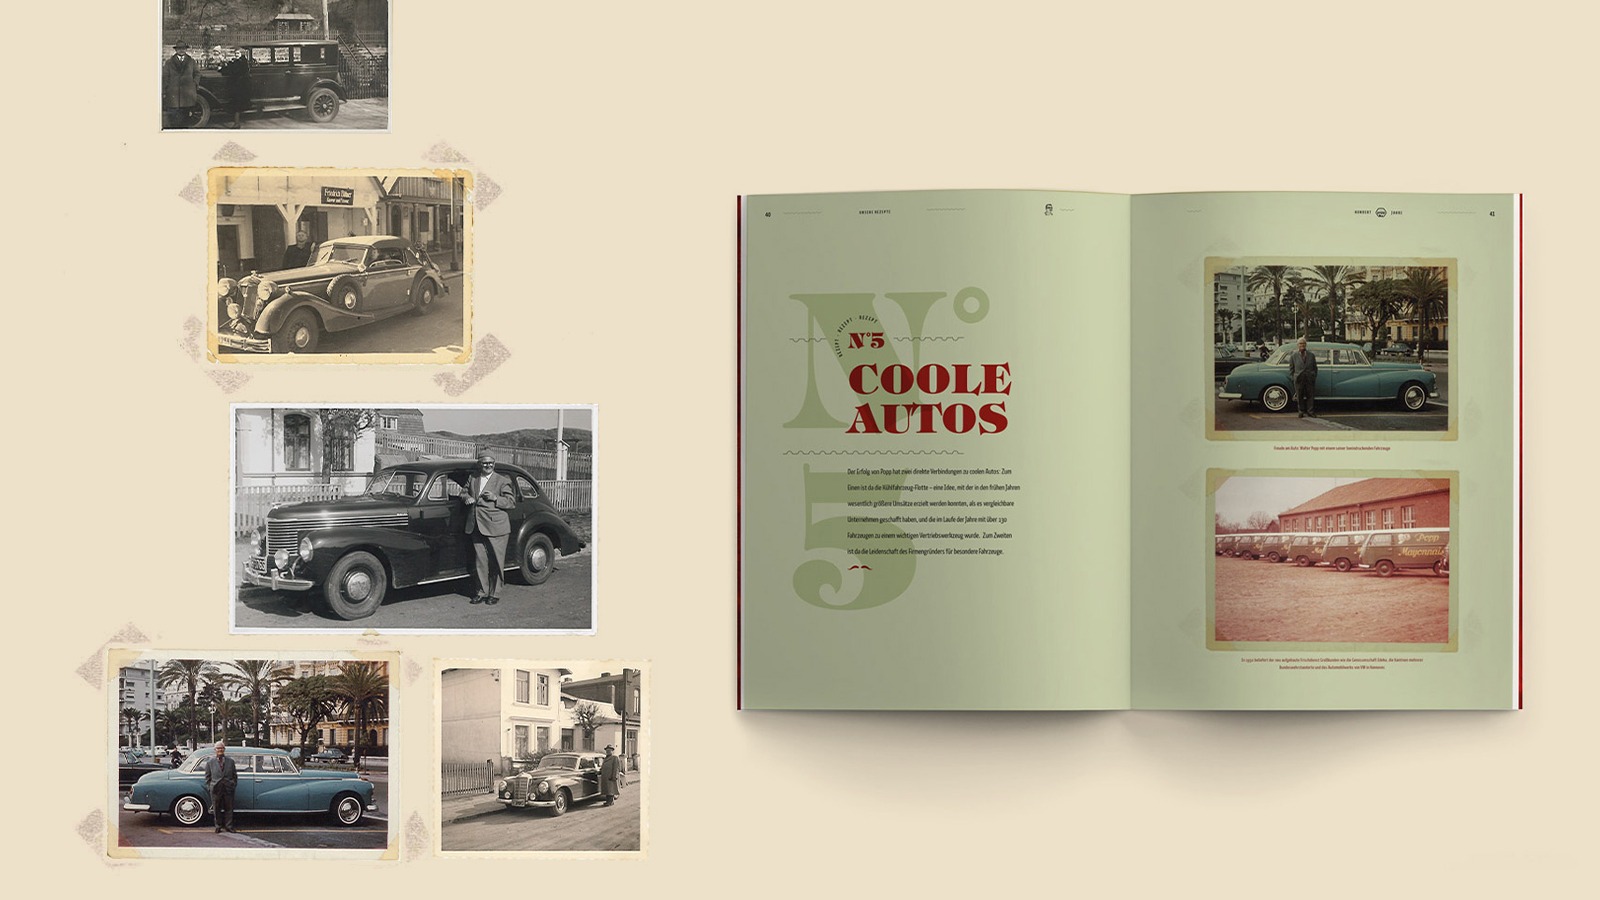 Links im Bild alte Aufnahmen von Autos. Rechts eine grüne Innenseite der Chronik mit dem Titel "Coole Autos" und ebenfalls Bildern von alten Autos.